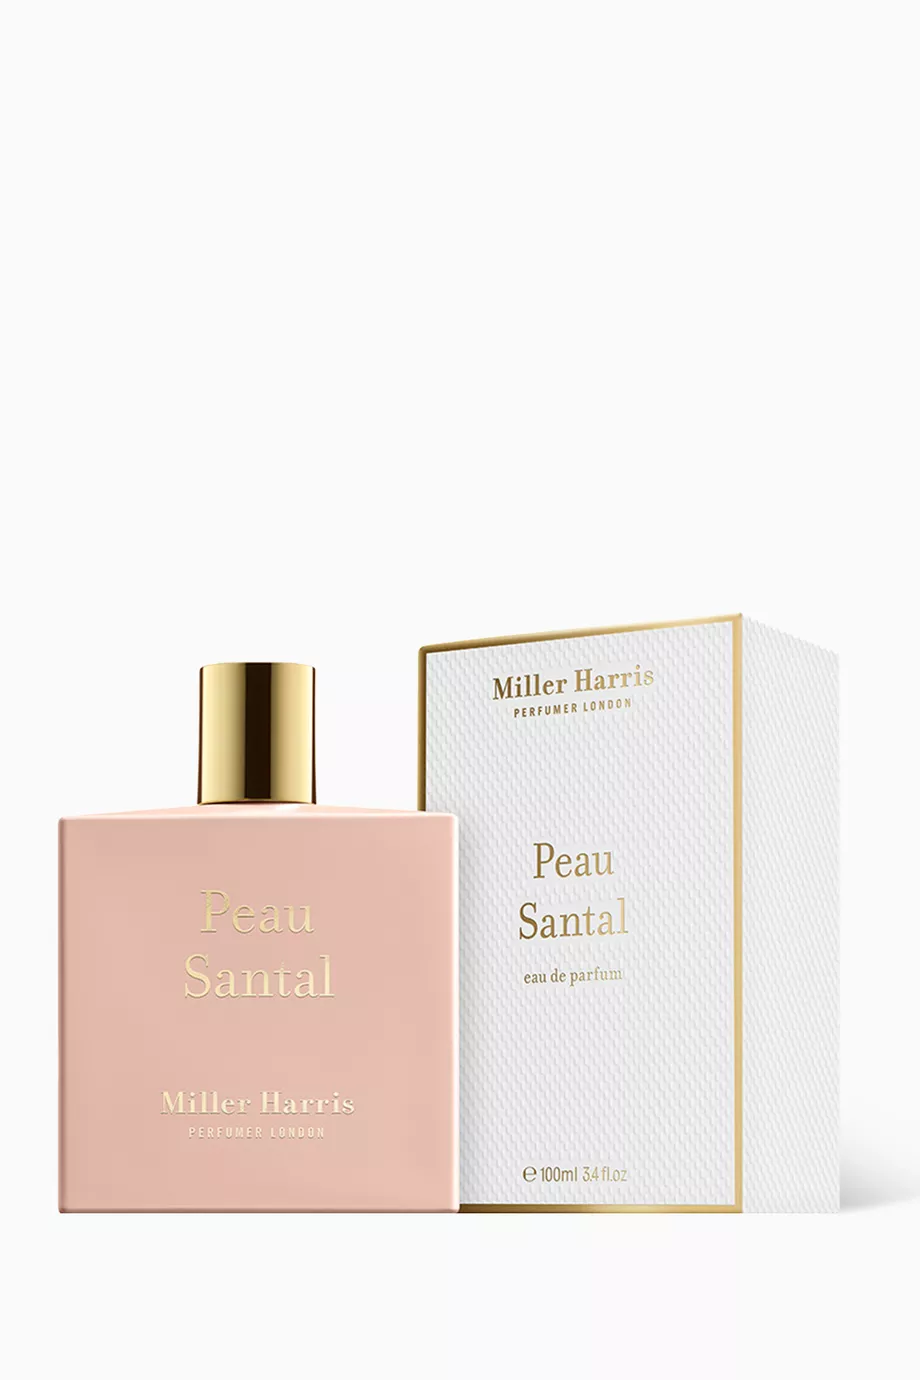 MILLER HARRIS Peau Santal » buy online